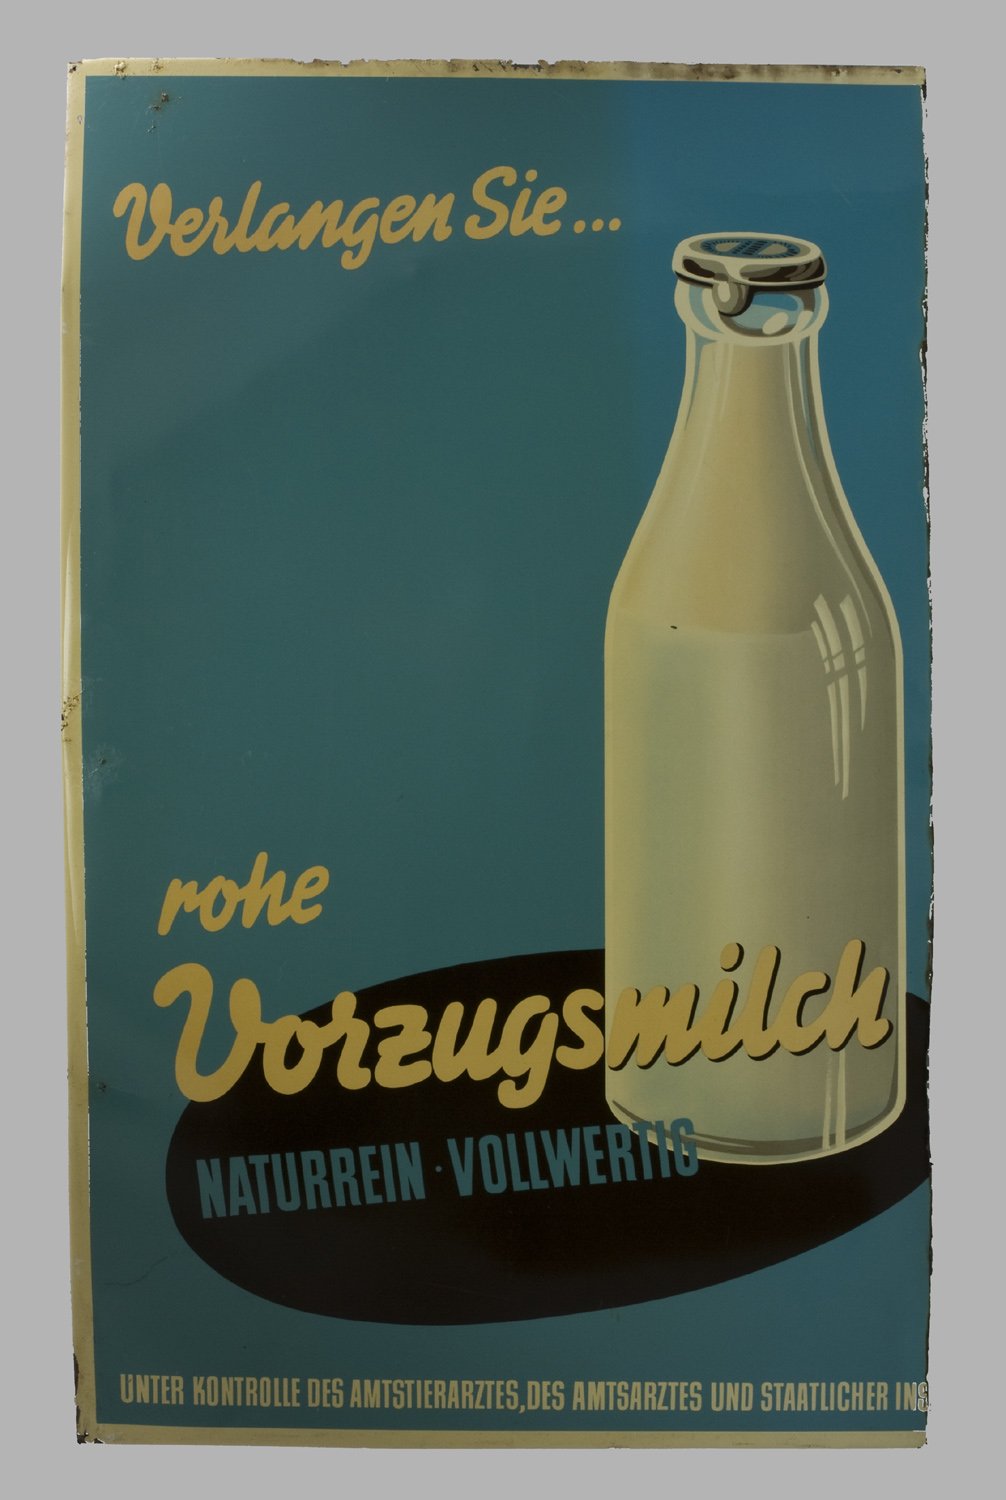 Reklameschild der Domäne Dahlem "Verlangen Sie rohe Vorzugsmilch" (Stiftung Domäne Dahlem - Landgut und Museum, Weiternutzung nur mit Genehmigung des Museums CC BY-NC-SA)